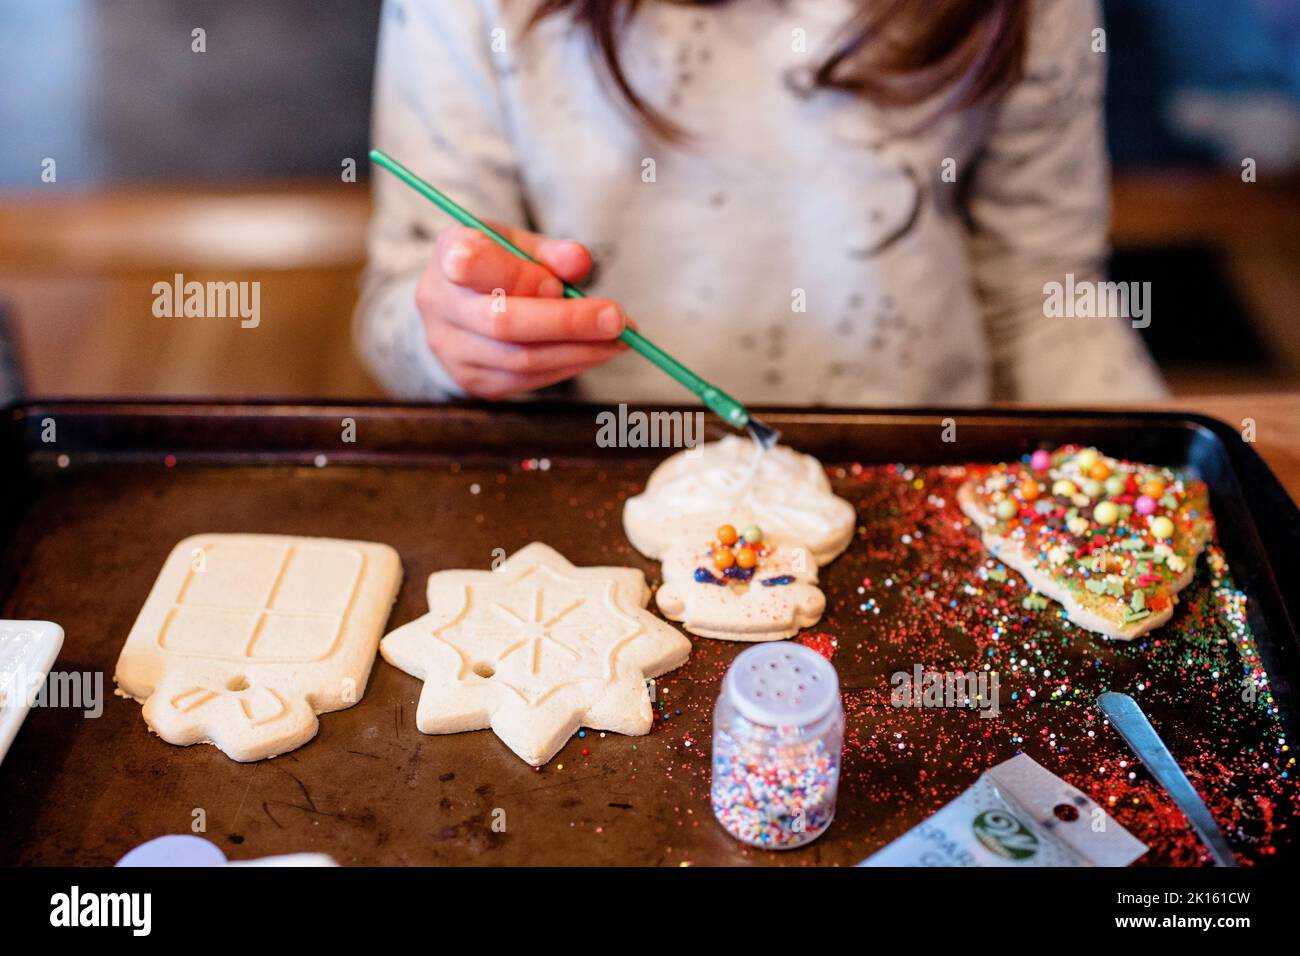 Ein Kind dekoriert ein unordentliches Tablett mit weihnachtskeksen Stockfoto